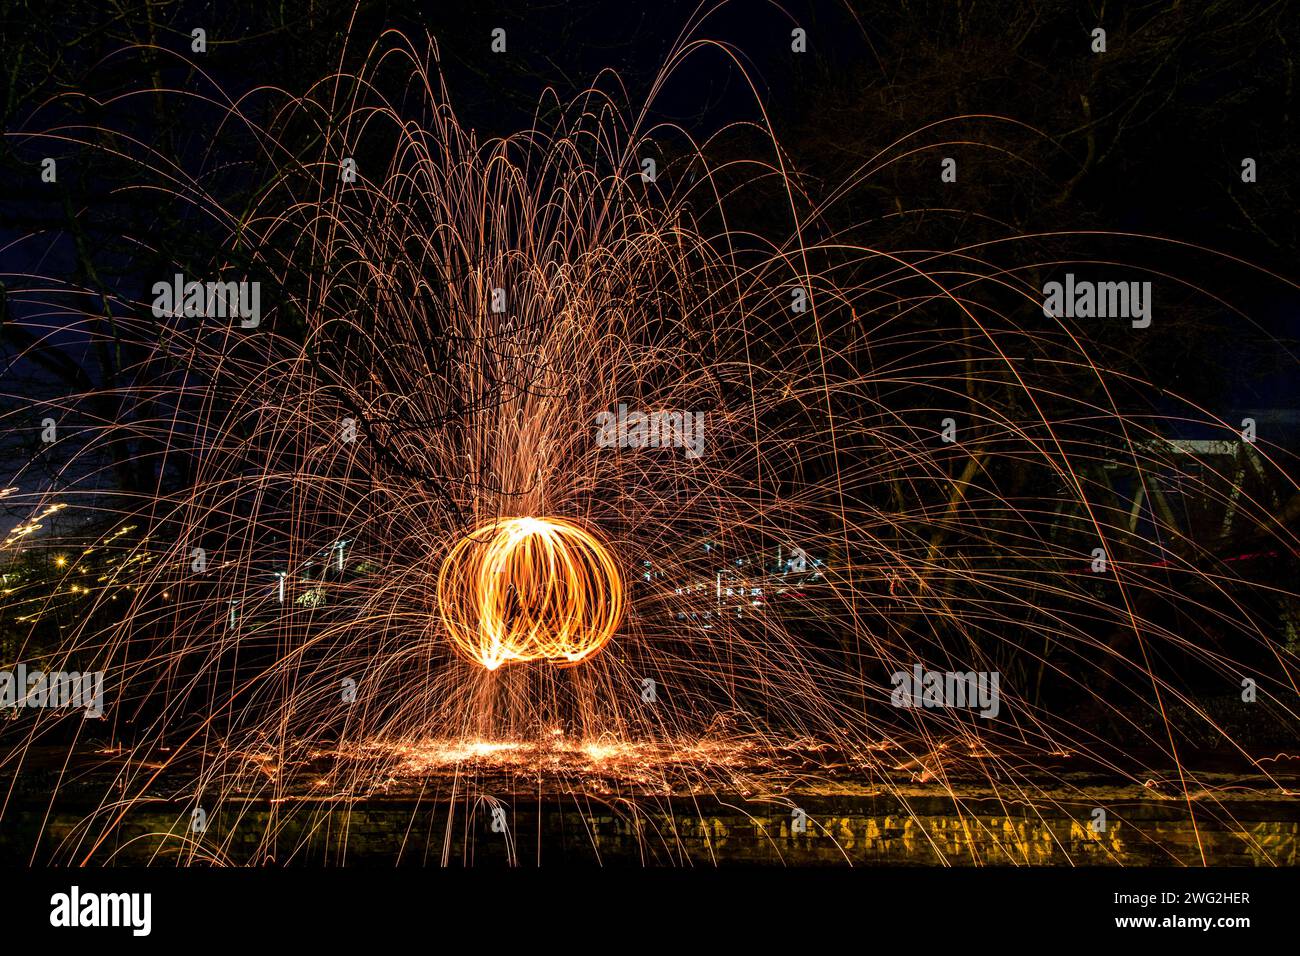 Ein faszinierendes Bild, das das wunderschöne Schauspiel des Feuers mit Feuerwerkskörpern in der Nähe des Wassers einfängt Stockfoto